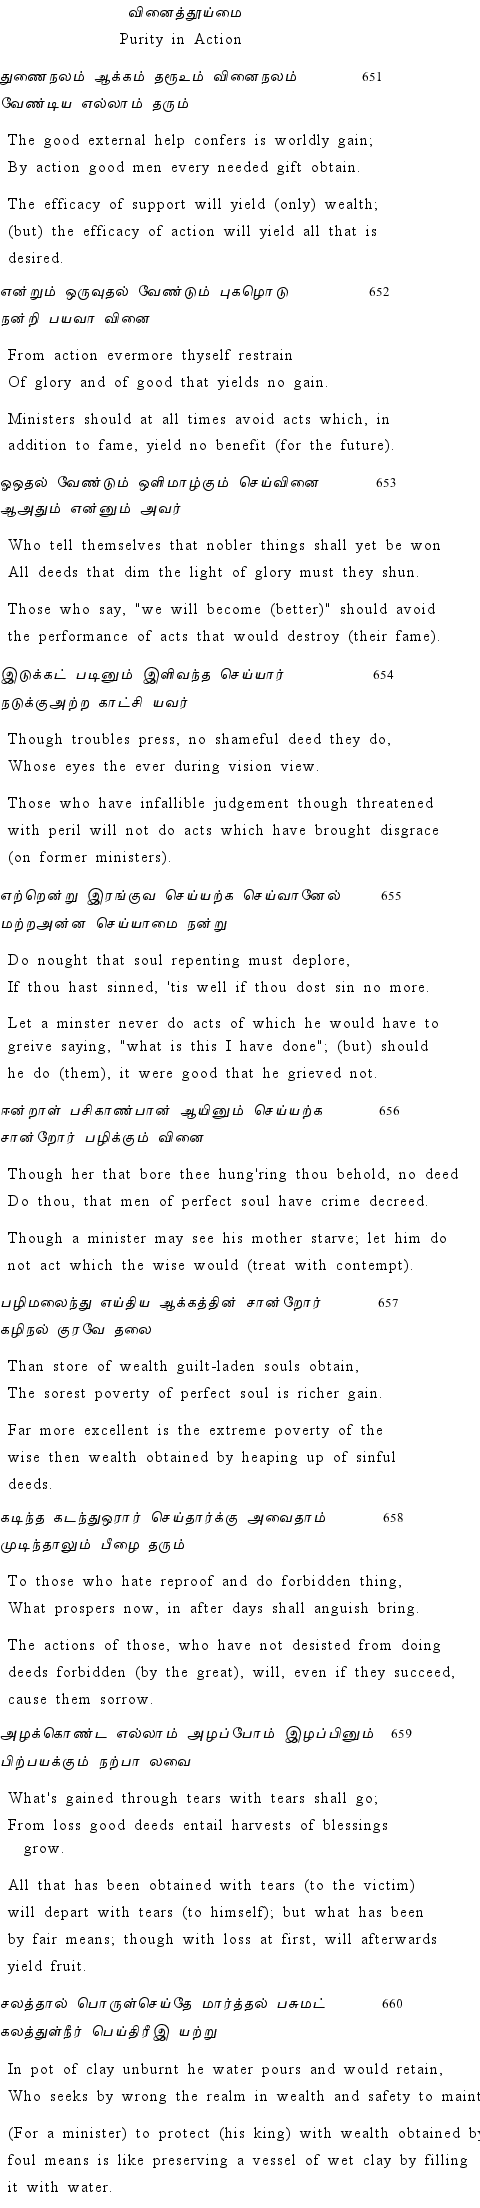 Text of Adhikaram 66